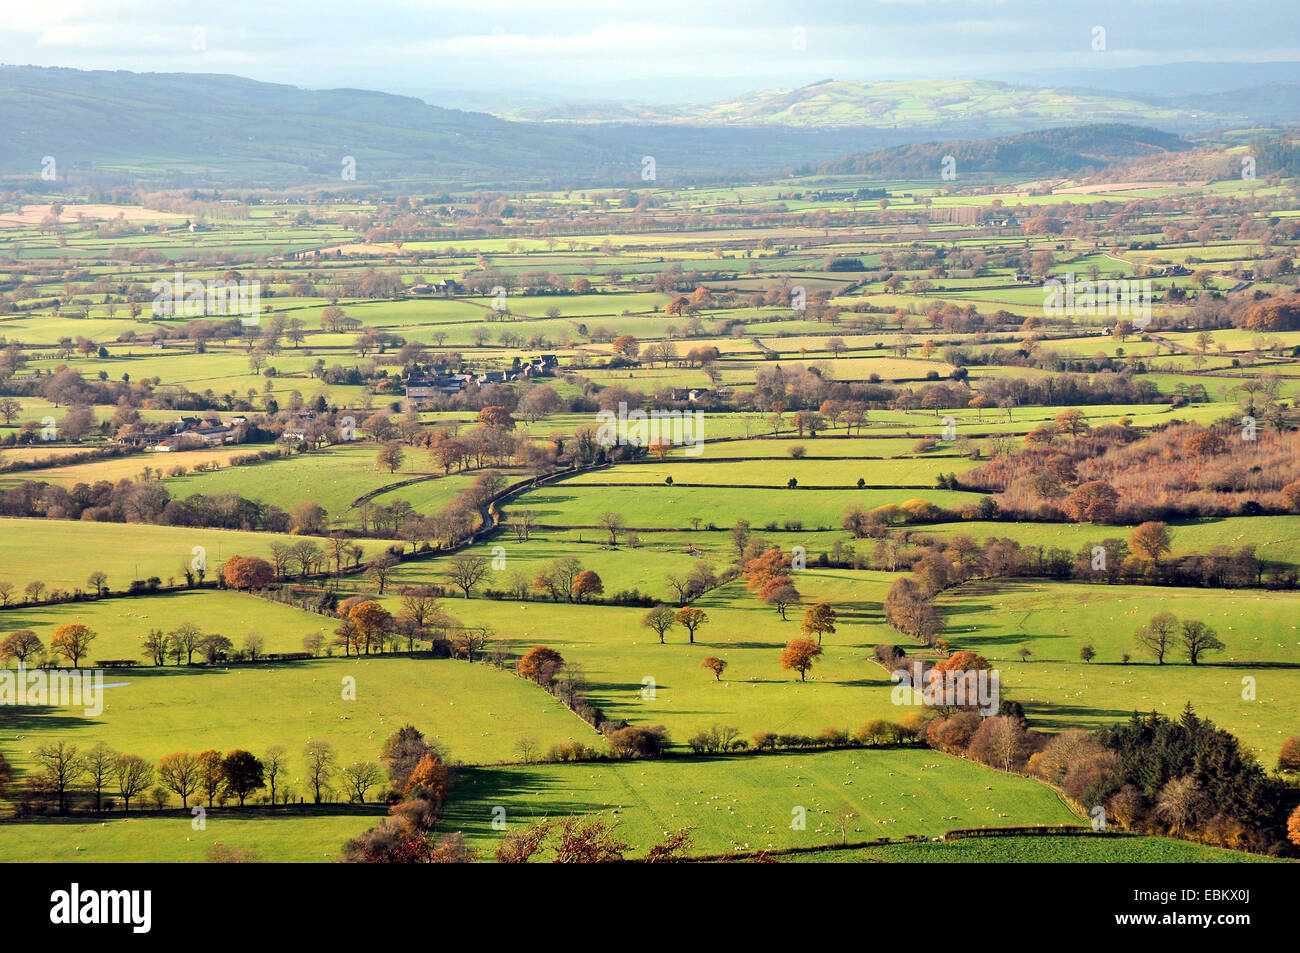 Mirando al occidente desde la Larga Mynd Shropshire a través del sur de Gales. Foto de stock